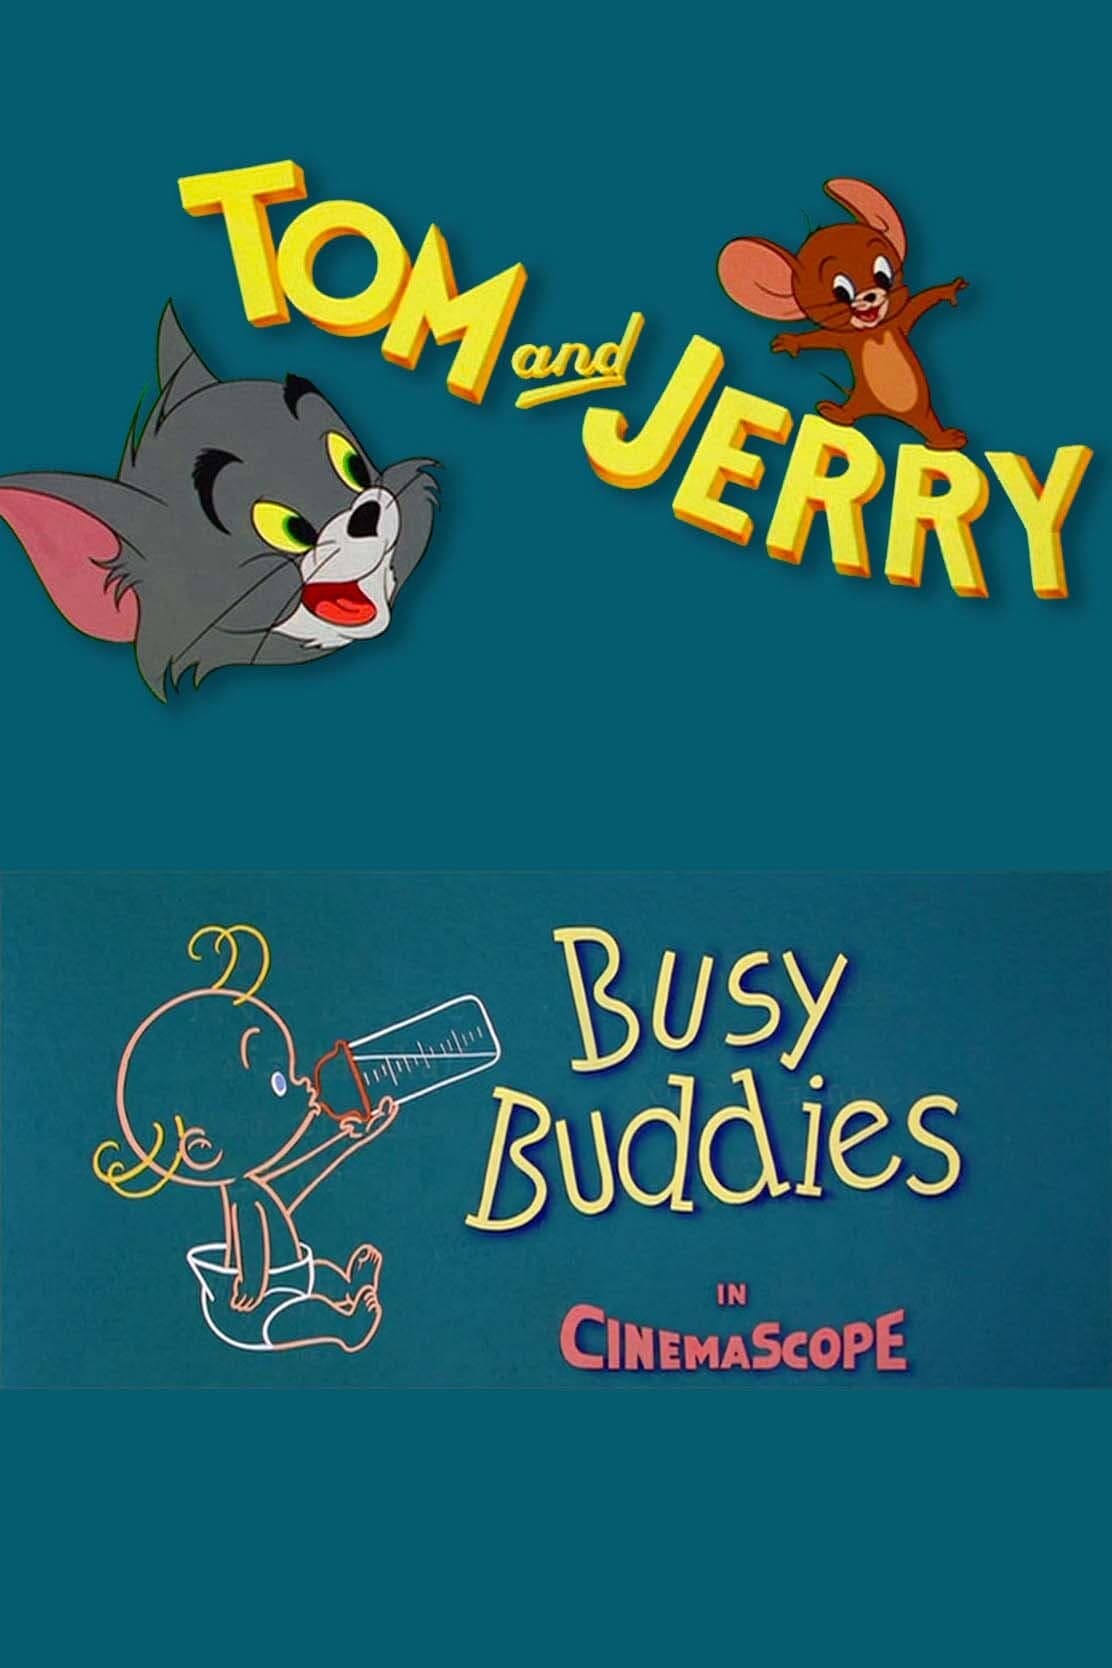 Busy Buddies (1956)